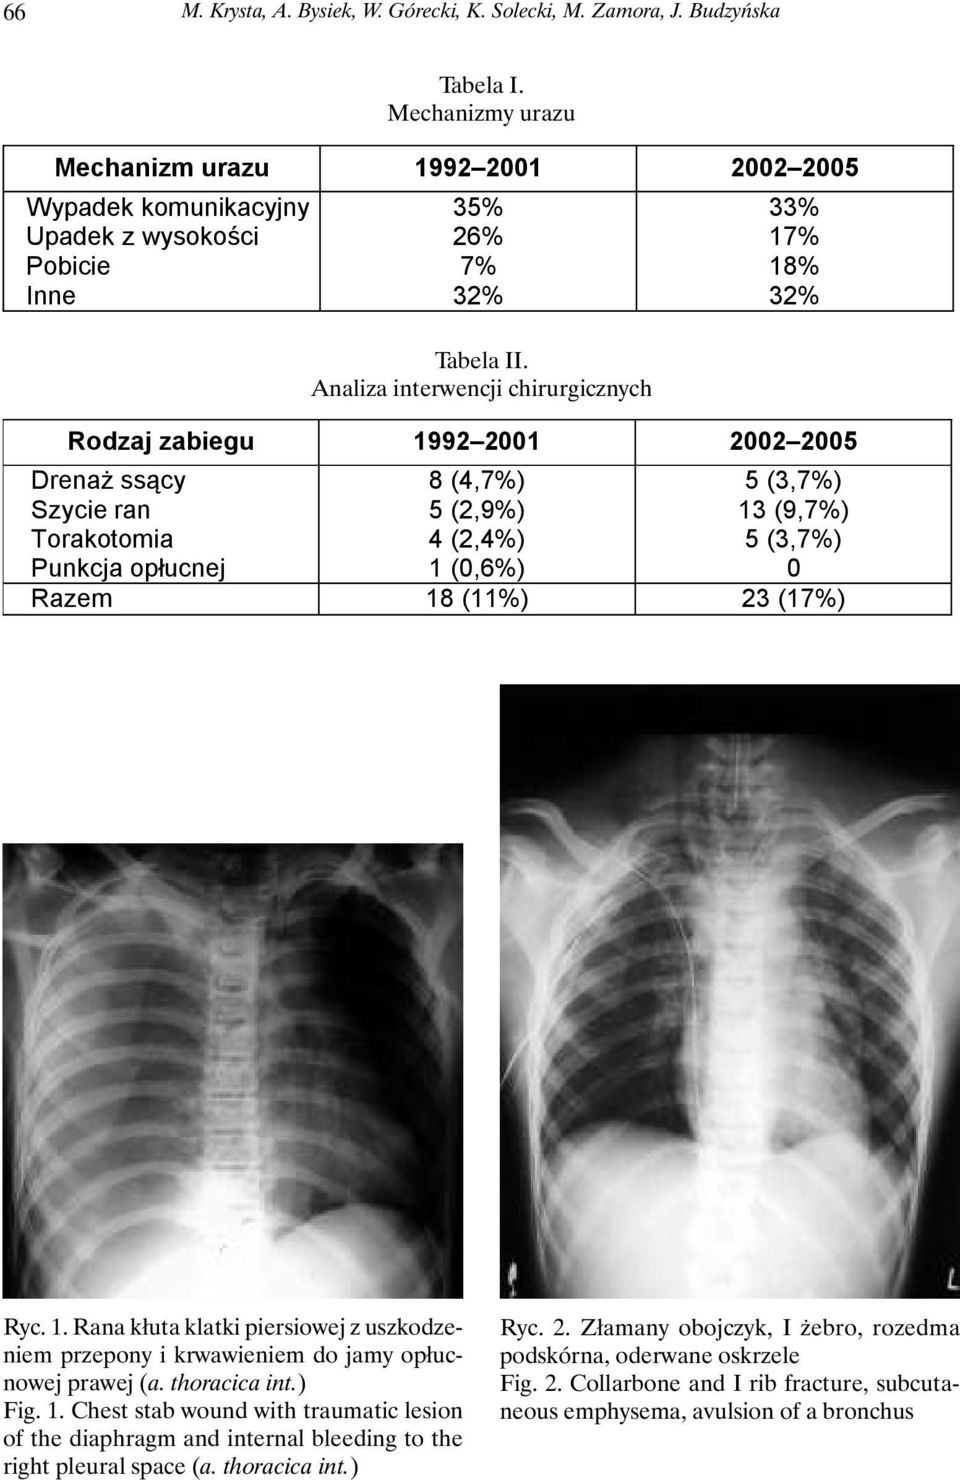 Analiza interwencji chirurgicznych 33% 17% 18% 32% Rodzaj zabiegu 1992 2001 2002 2005 DrenaŜ ssący Szycie ran Torakotomia Punkcja opłucnej 8 (4,7%) 5 (2,9%) 4 (2,4%) 1 (0,6%) 5 (3,7%) 13 (9,7%) 5